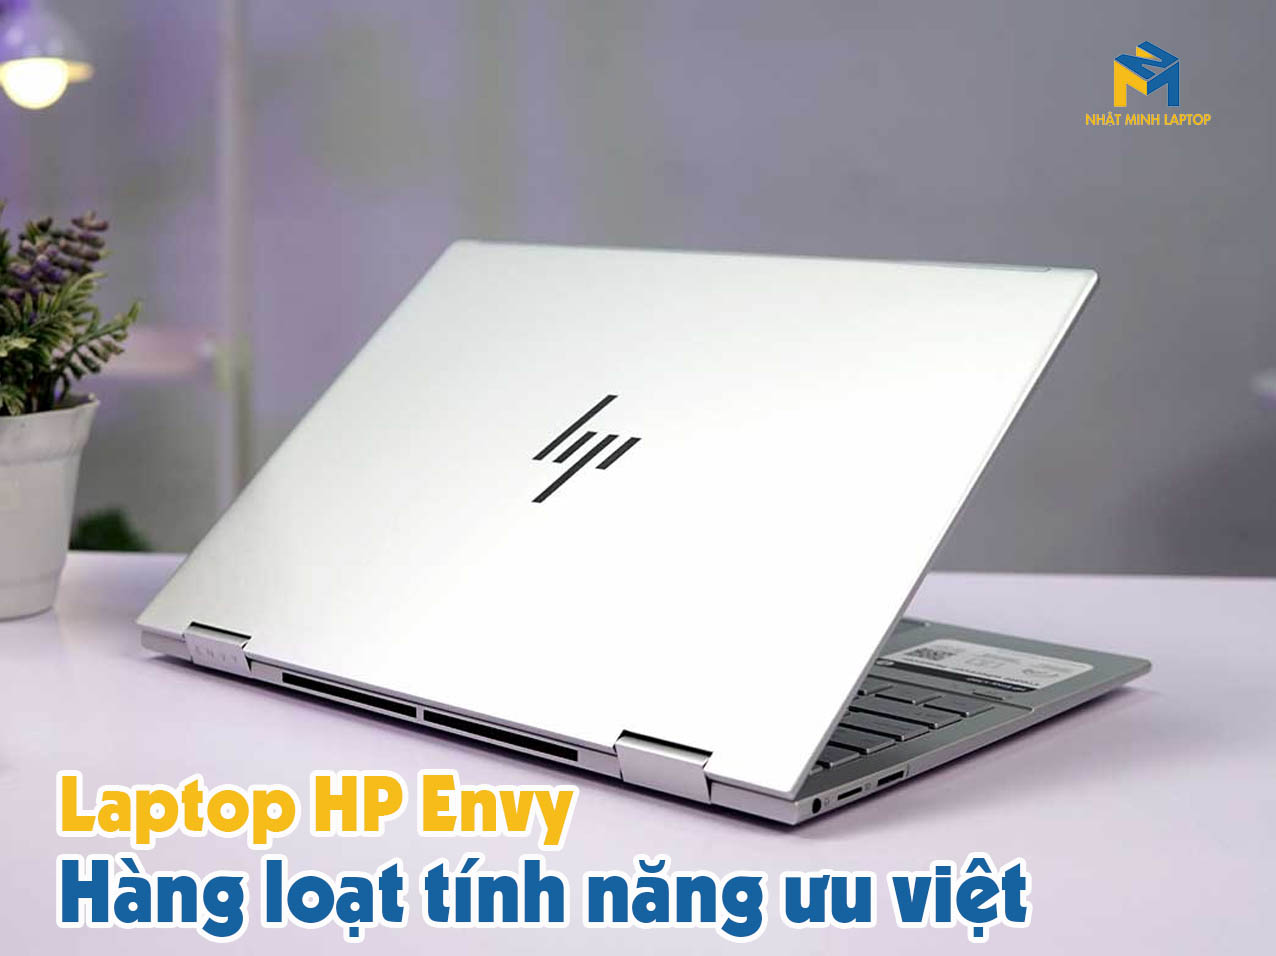 Laptop HP Envy sở hữu 4 tính năng cực kỳ ưu việt